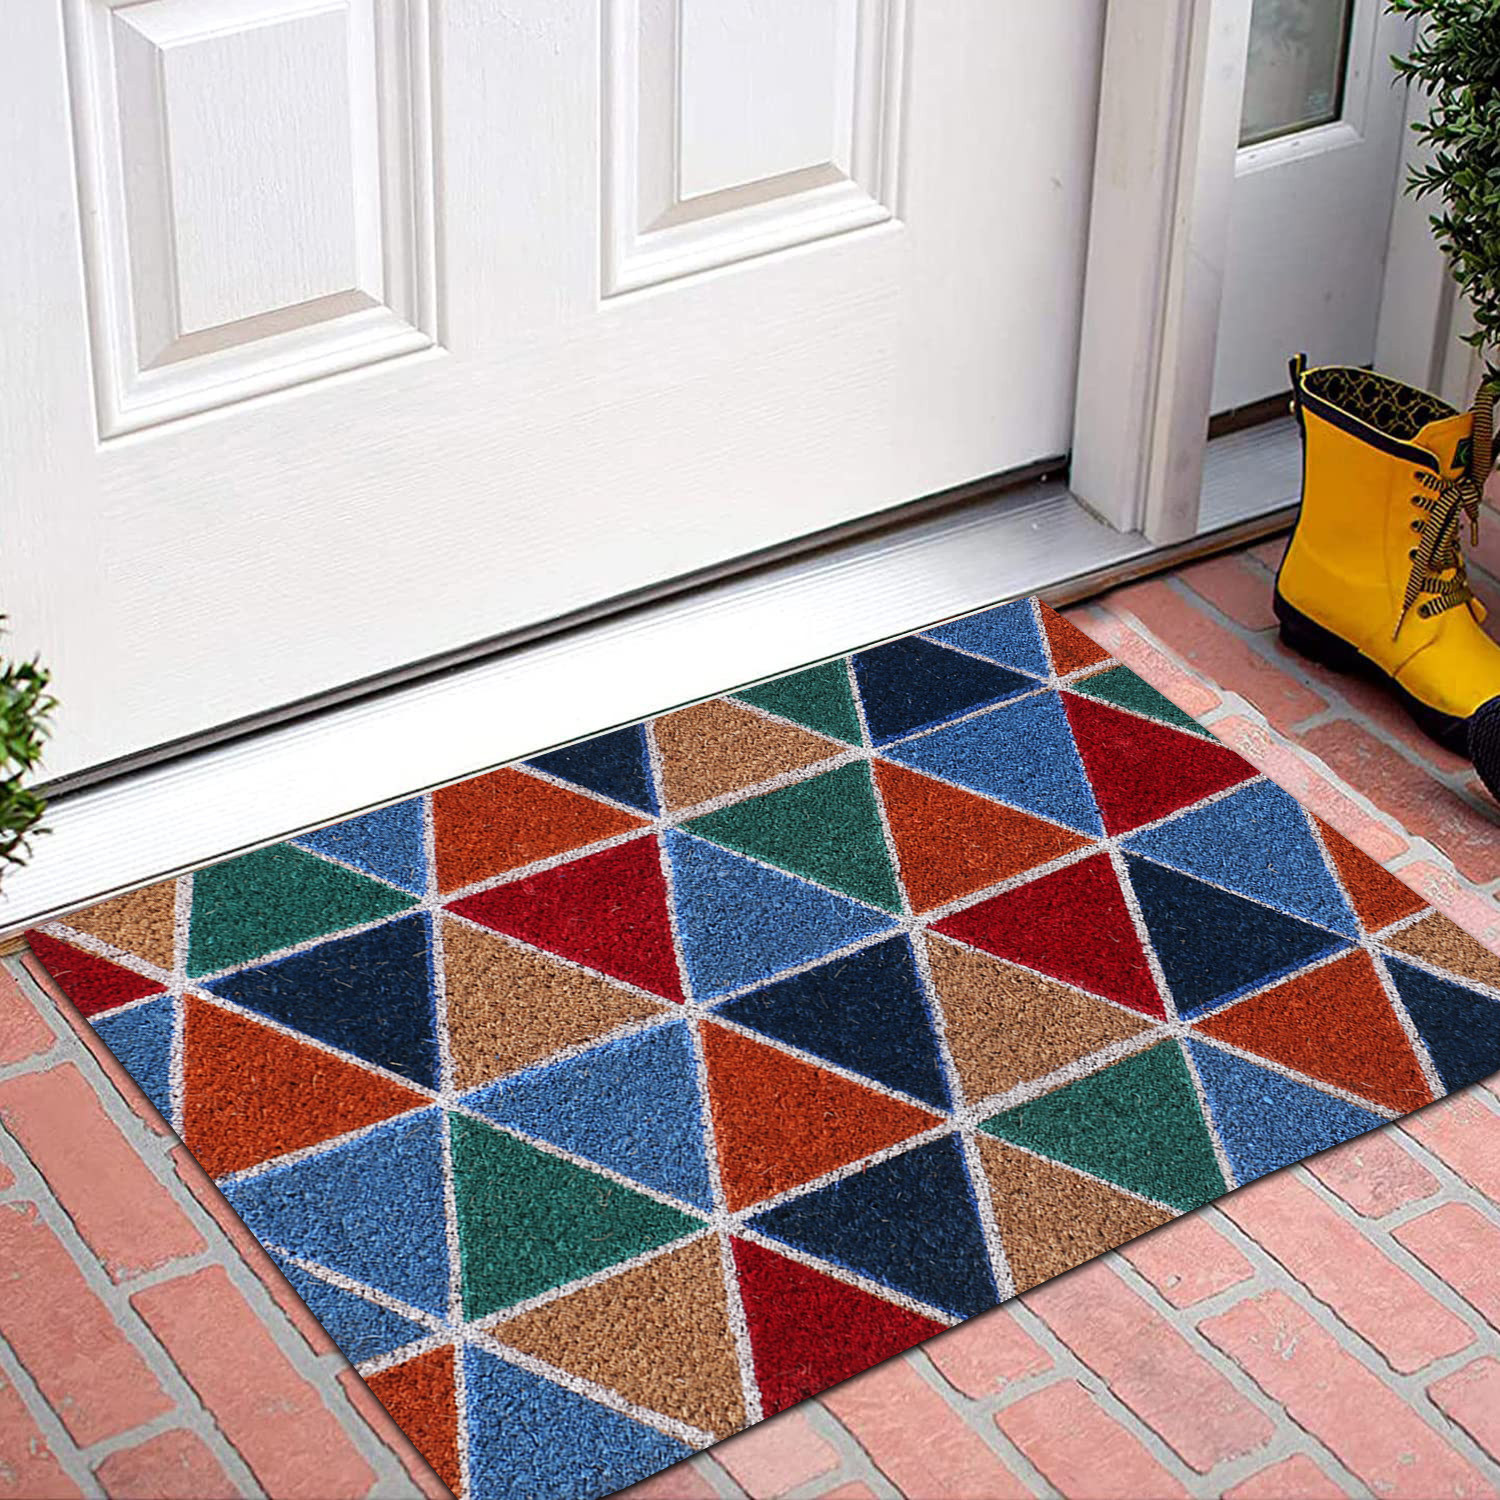 Kuber Industries Door Mat|Polyethylene Durable & Anti-Slip Natural Triangle Print Floor Mat|Rug For Indoor or Outdoor, 30x20 Inch (Brown)